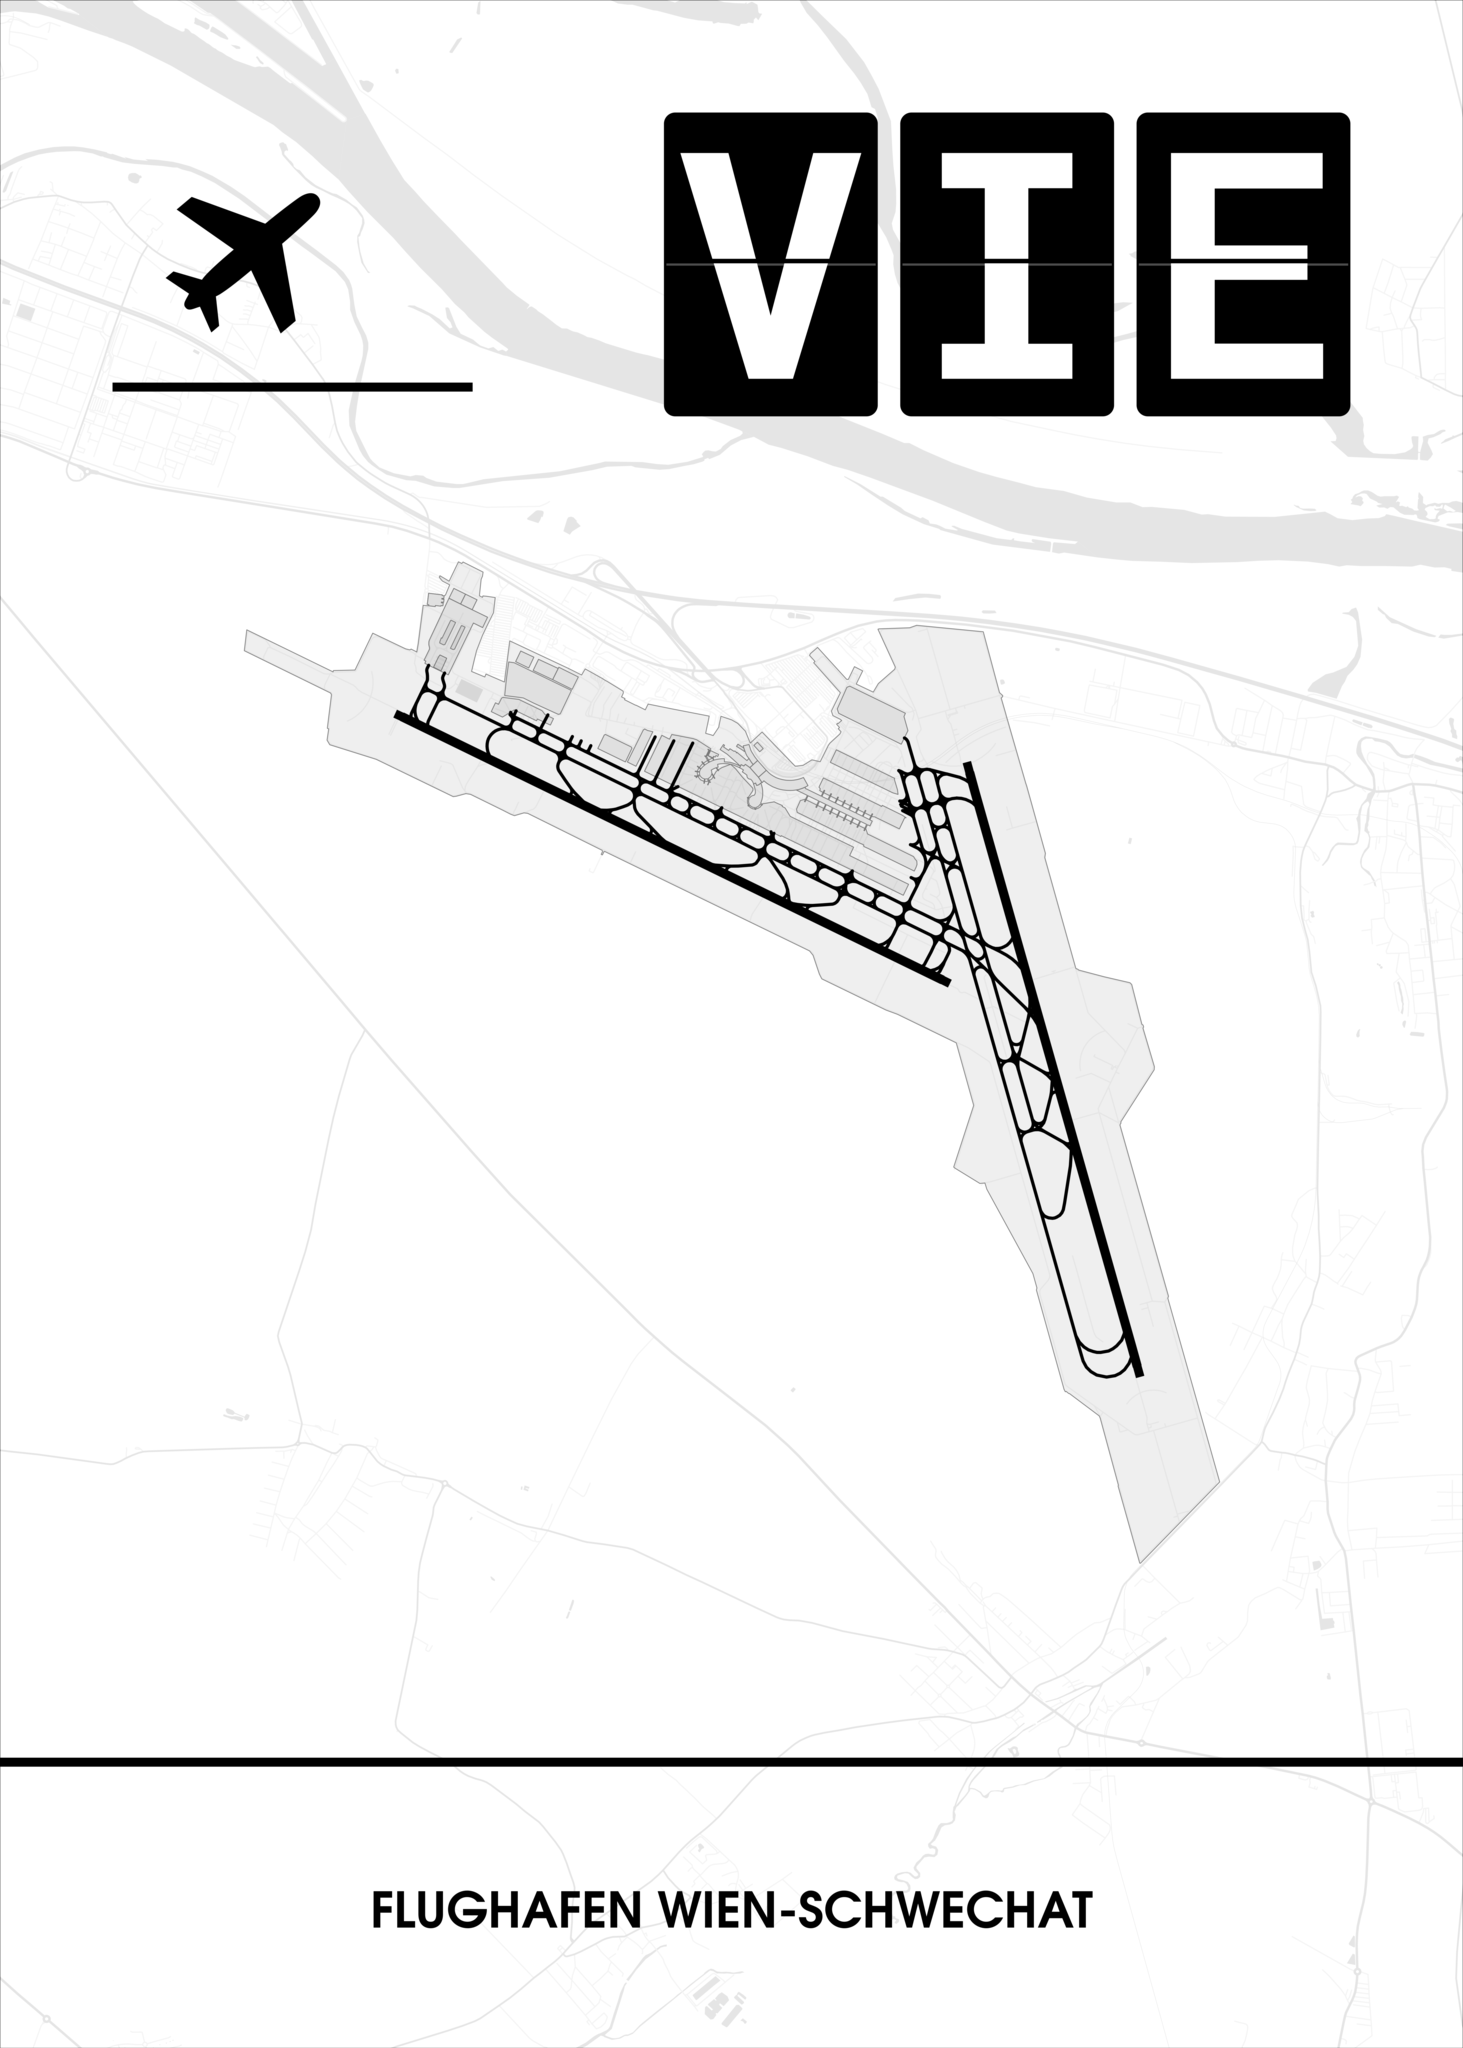 Wien-Schwechat LOWW) – (VIE CraftYourMap Flughafen / Poster 🇦🇹 🛫